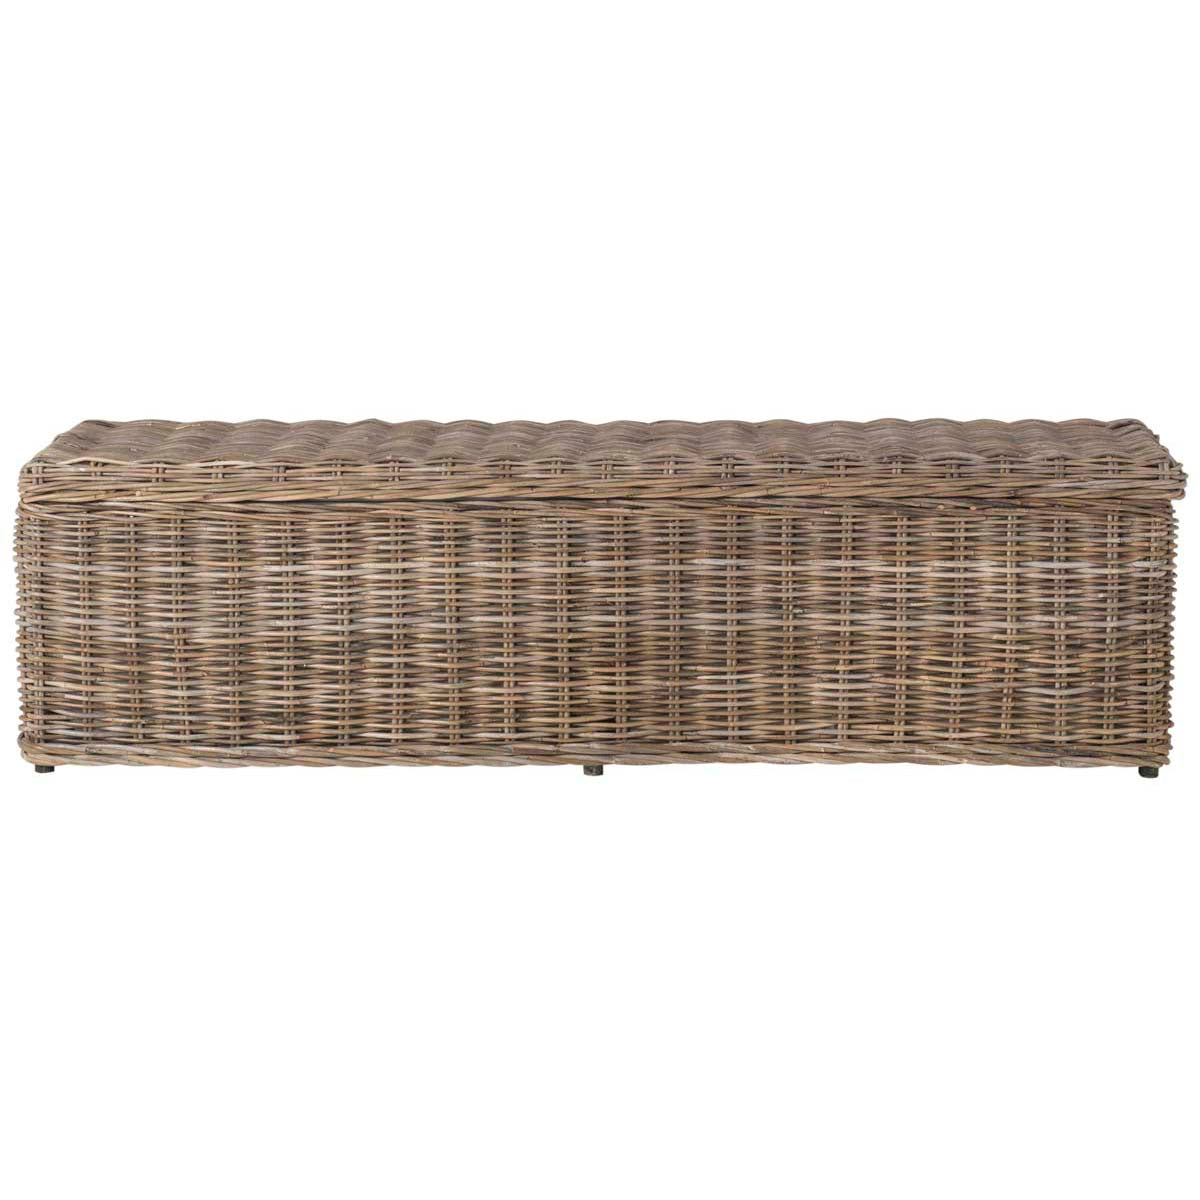 Safavieh Caius Wicker Bench With Storage , SEA7017